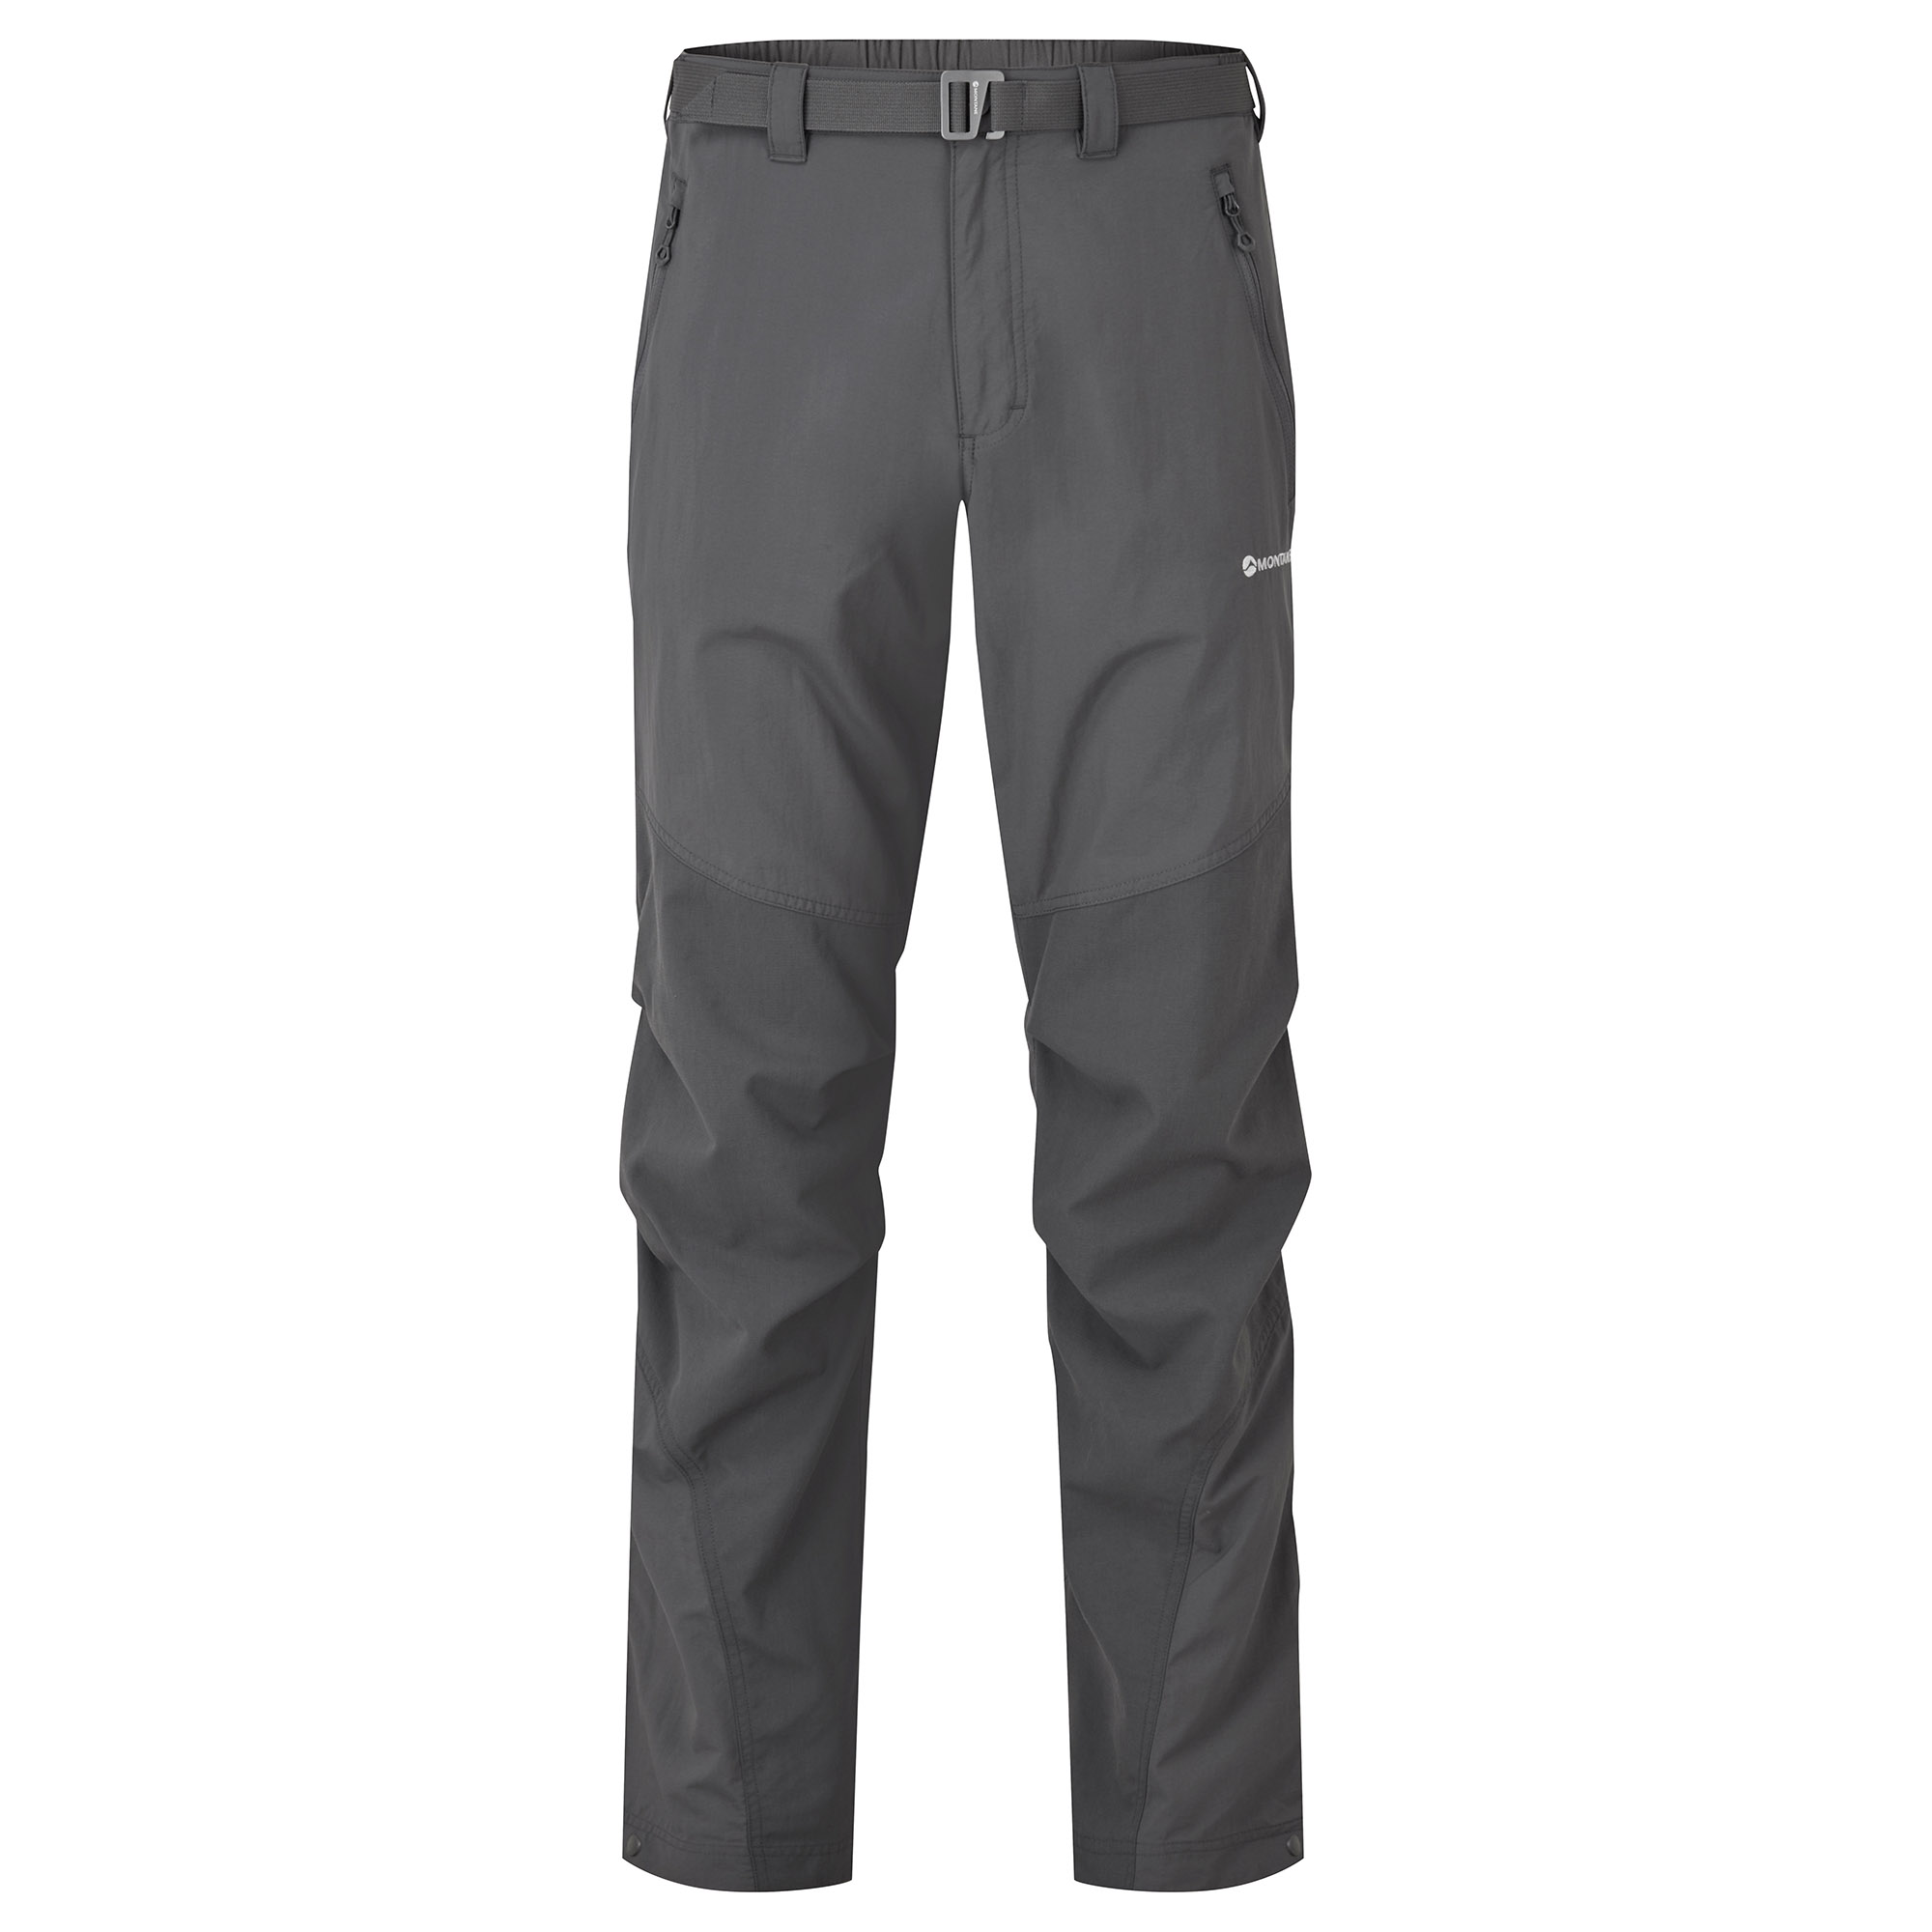 Montane pánské softshellové kalhoty Terra Pants - Prodloužené Nohavice Barva: Slate, Velikost: 36